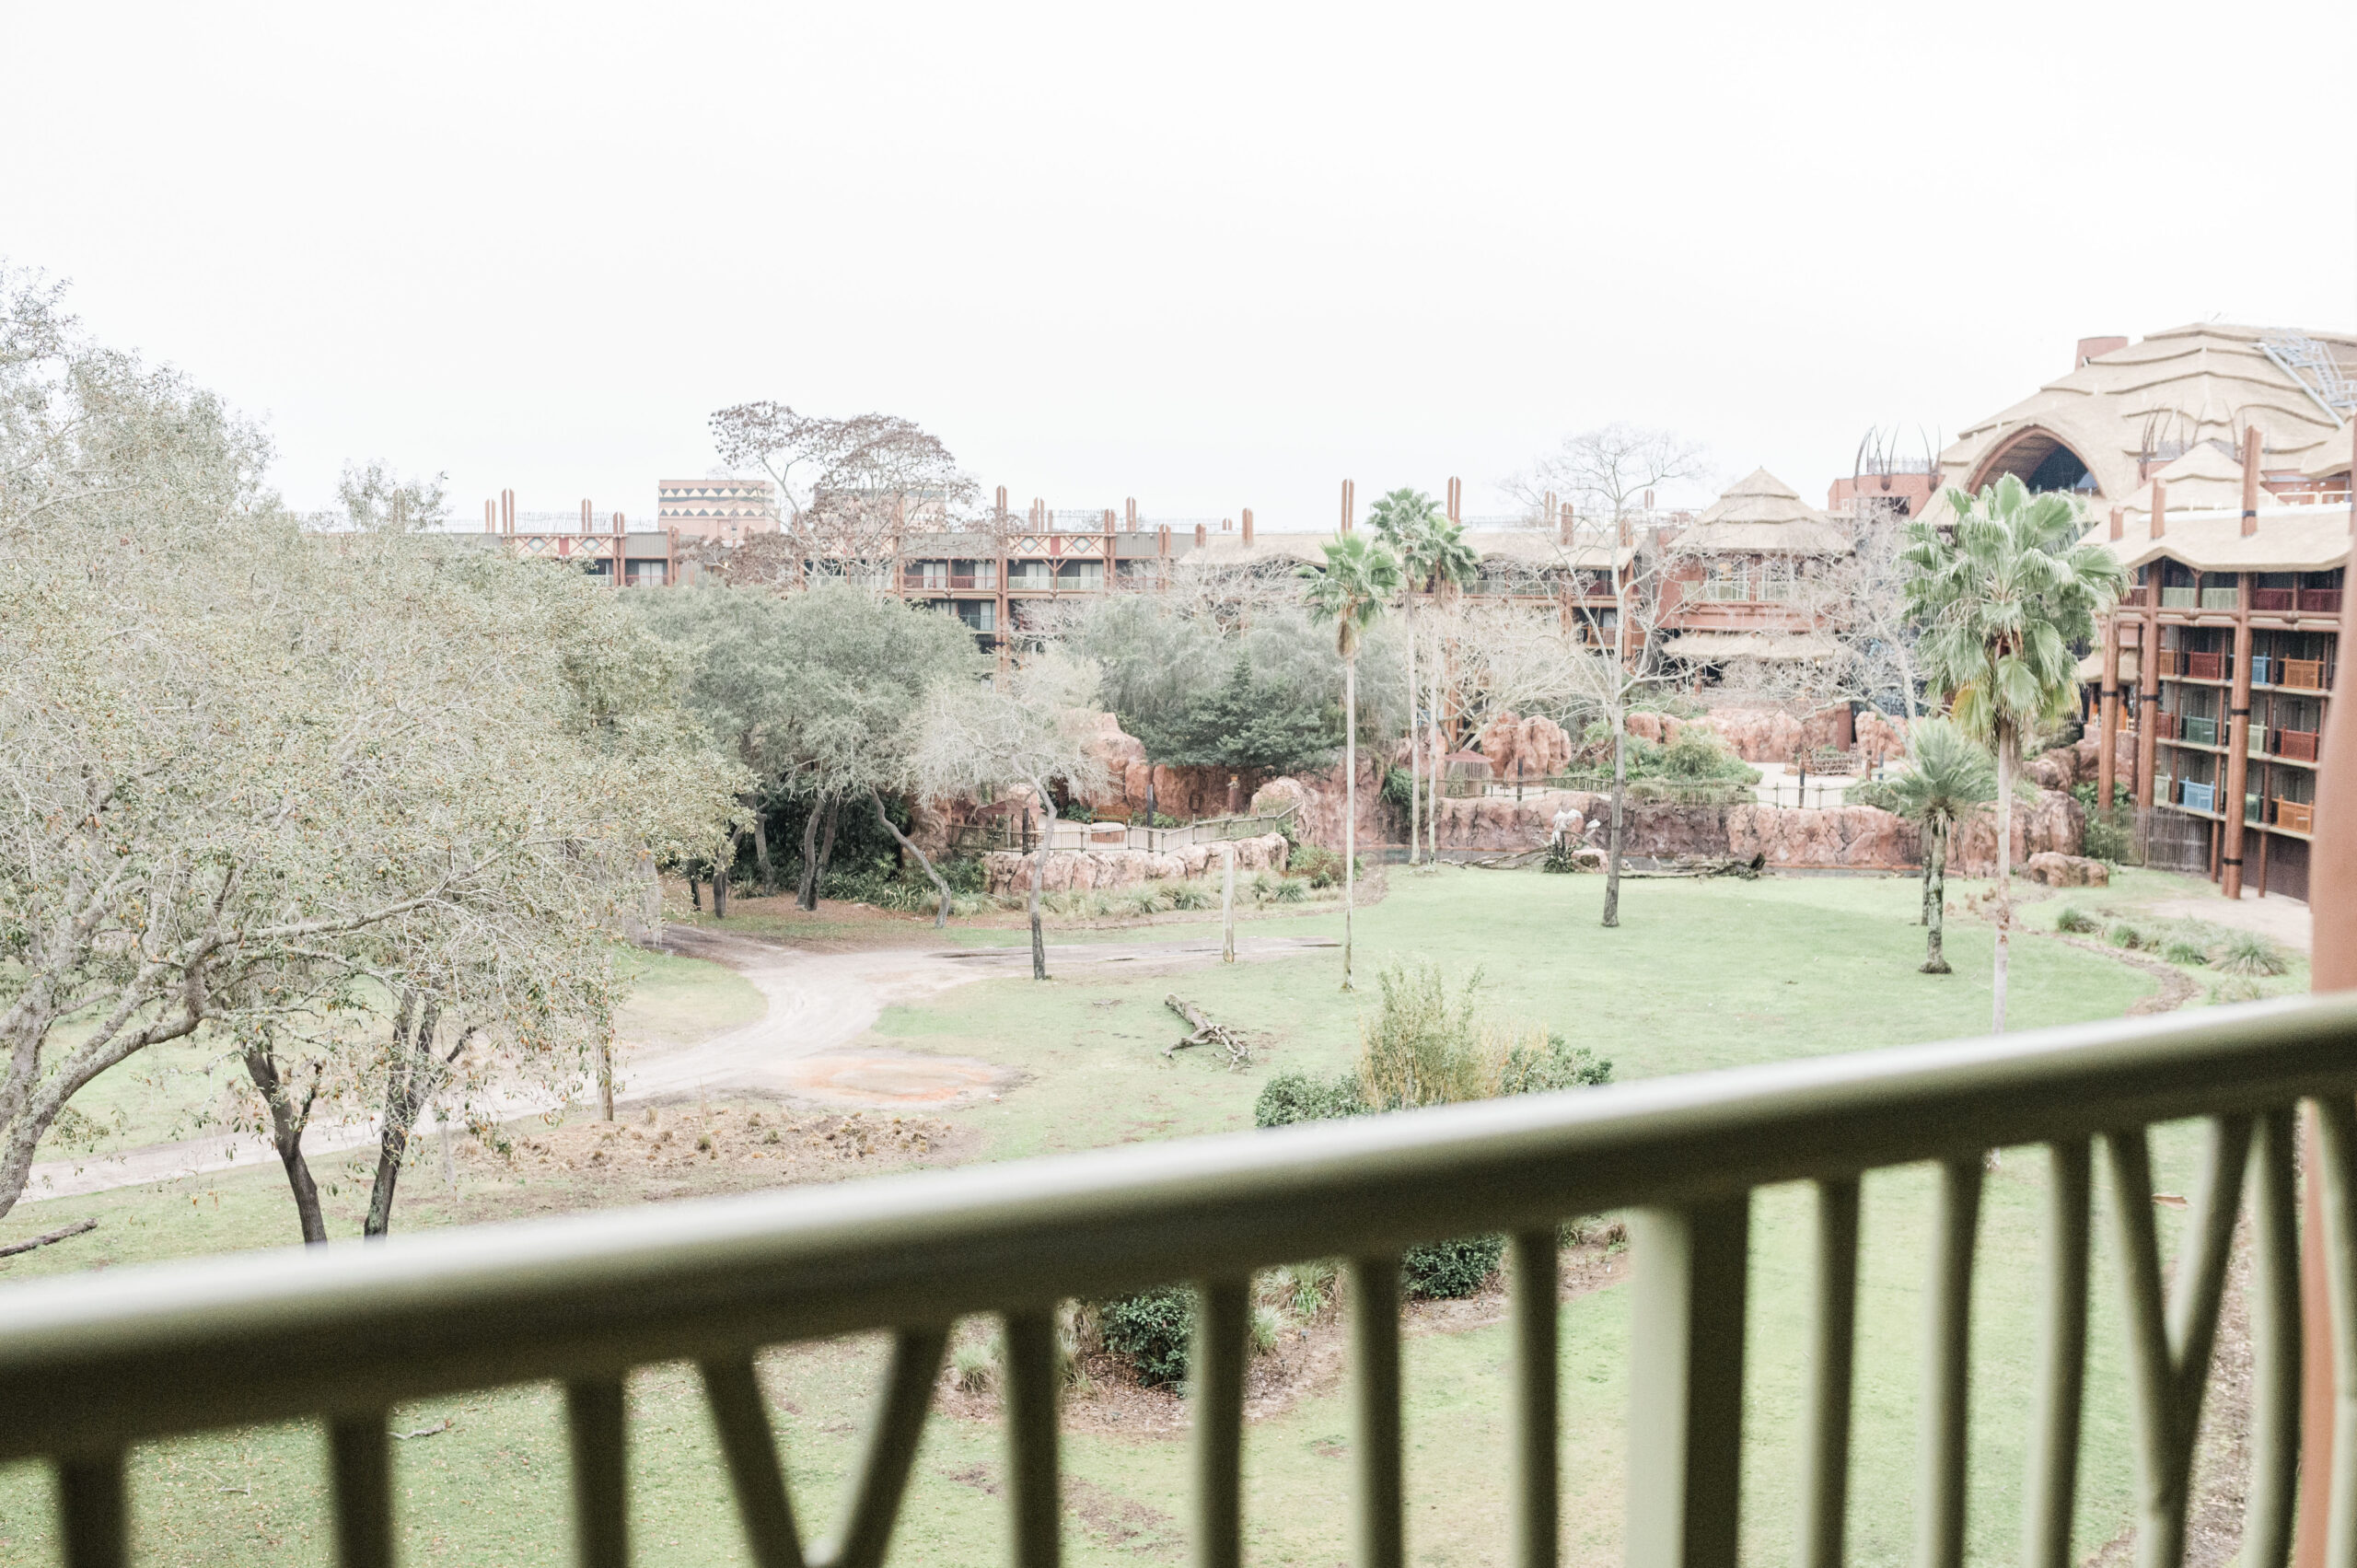 savanna view from balcony at the animal kingdom lodge villa jambo house